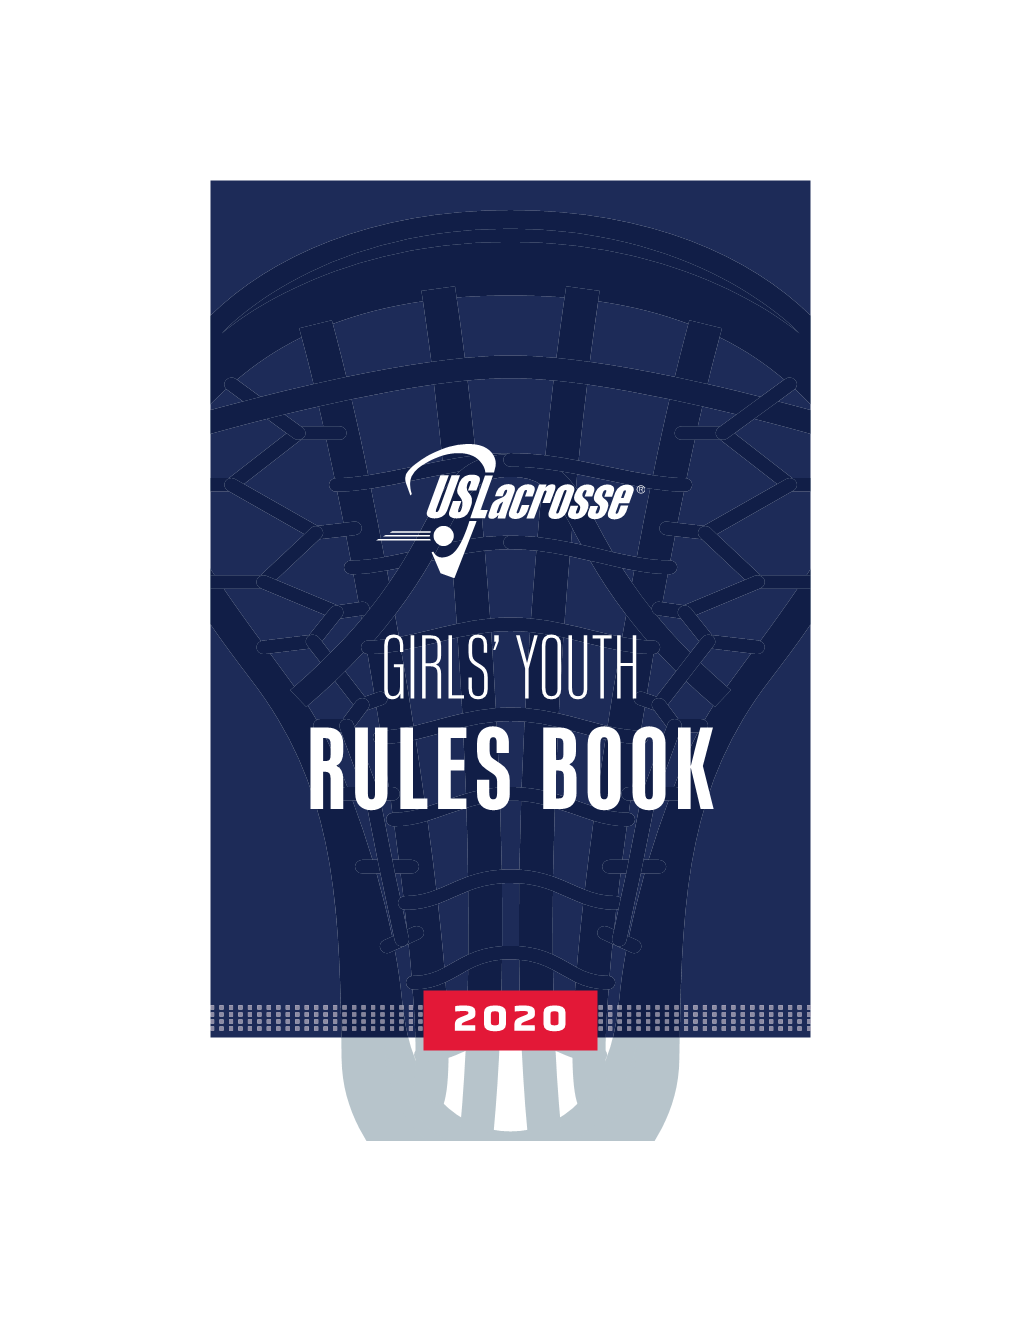 2020 GIRLS' YOUTH RULEBOOK I USLACROSSE.ORG M